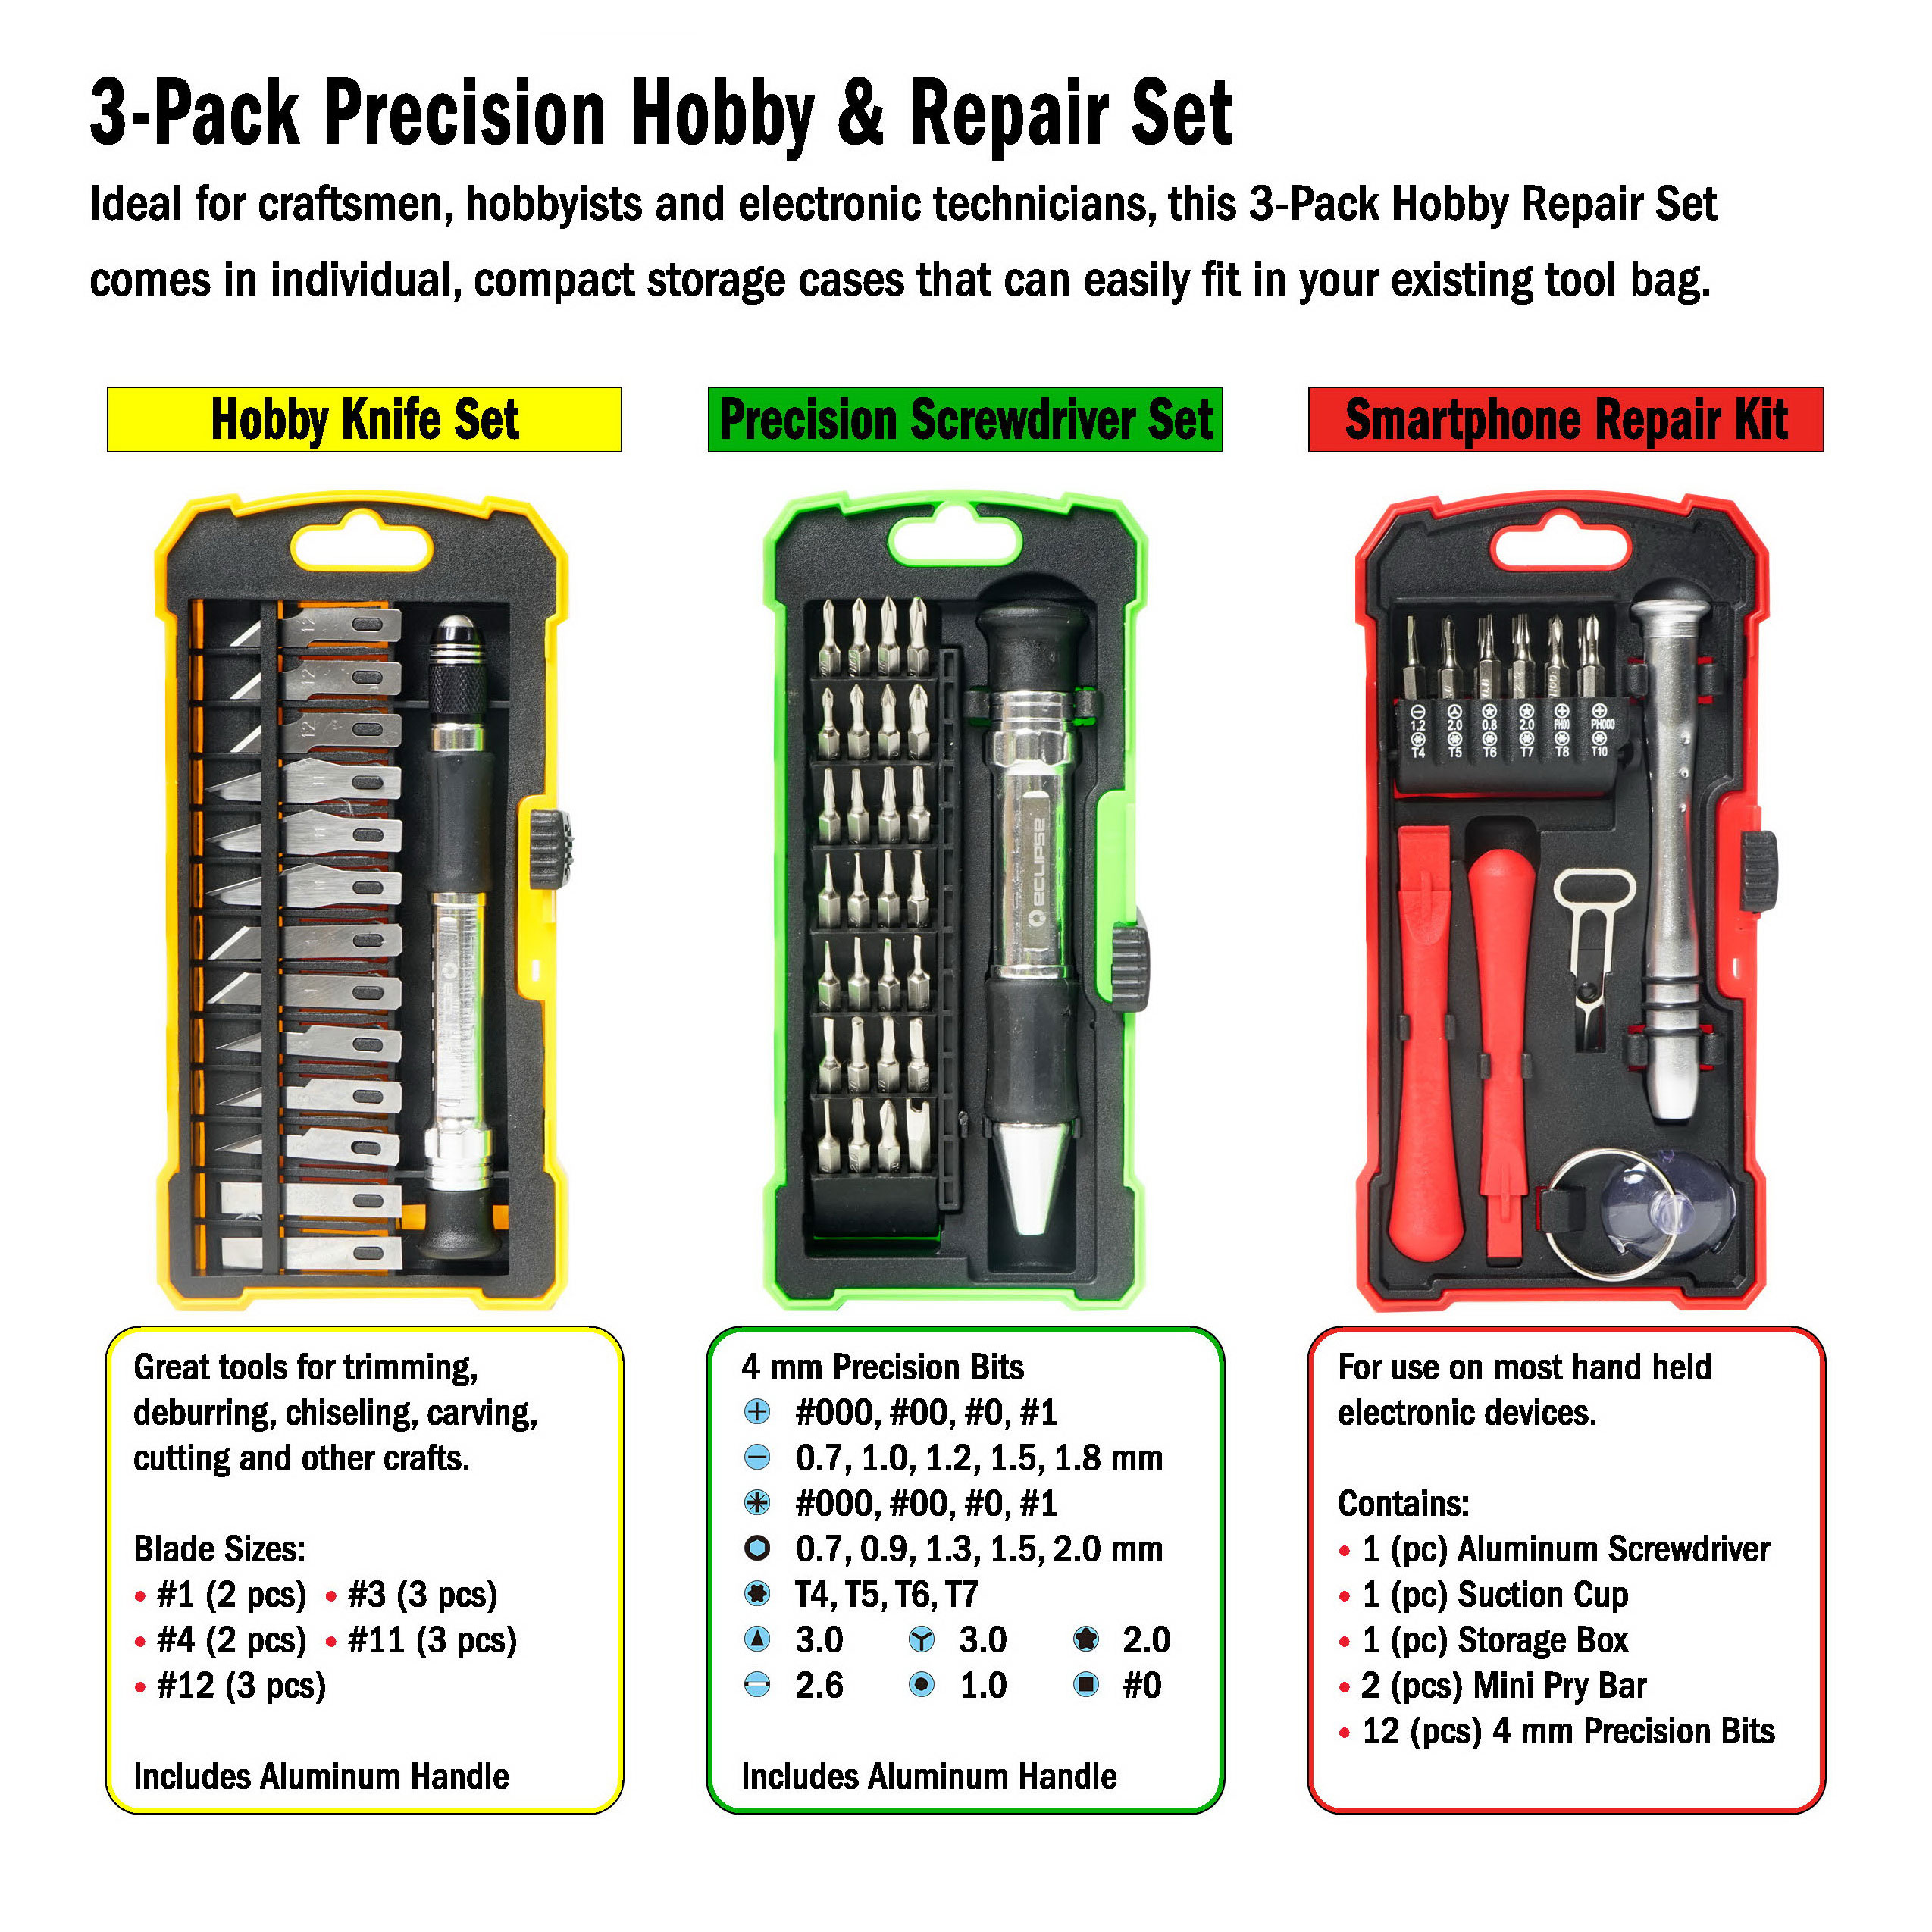 Smart Phone repair, Precision Screw driver, Hobby Knife kits